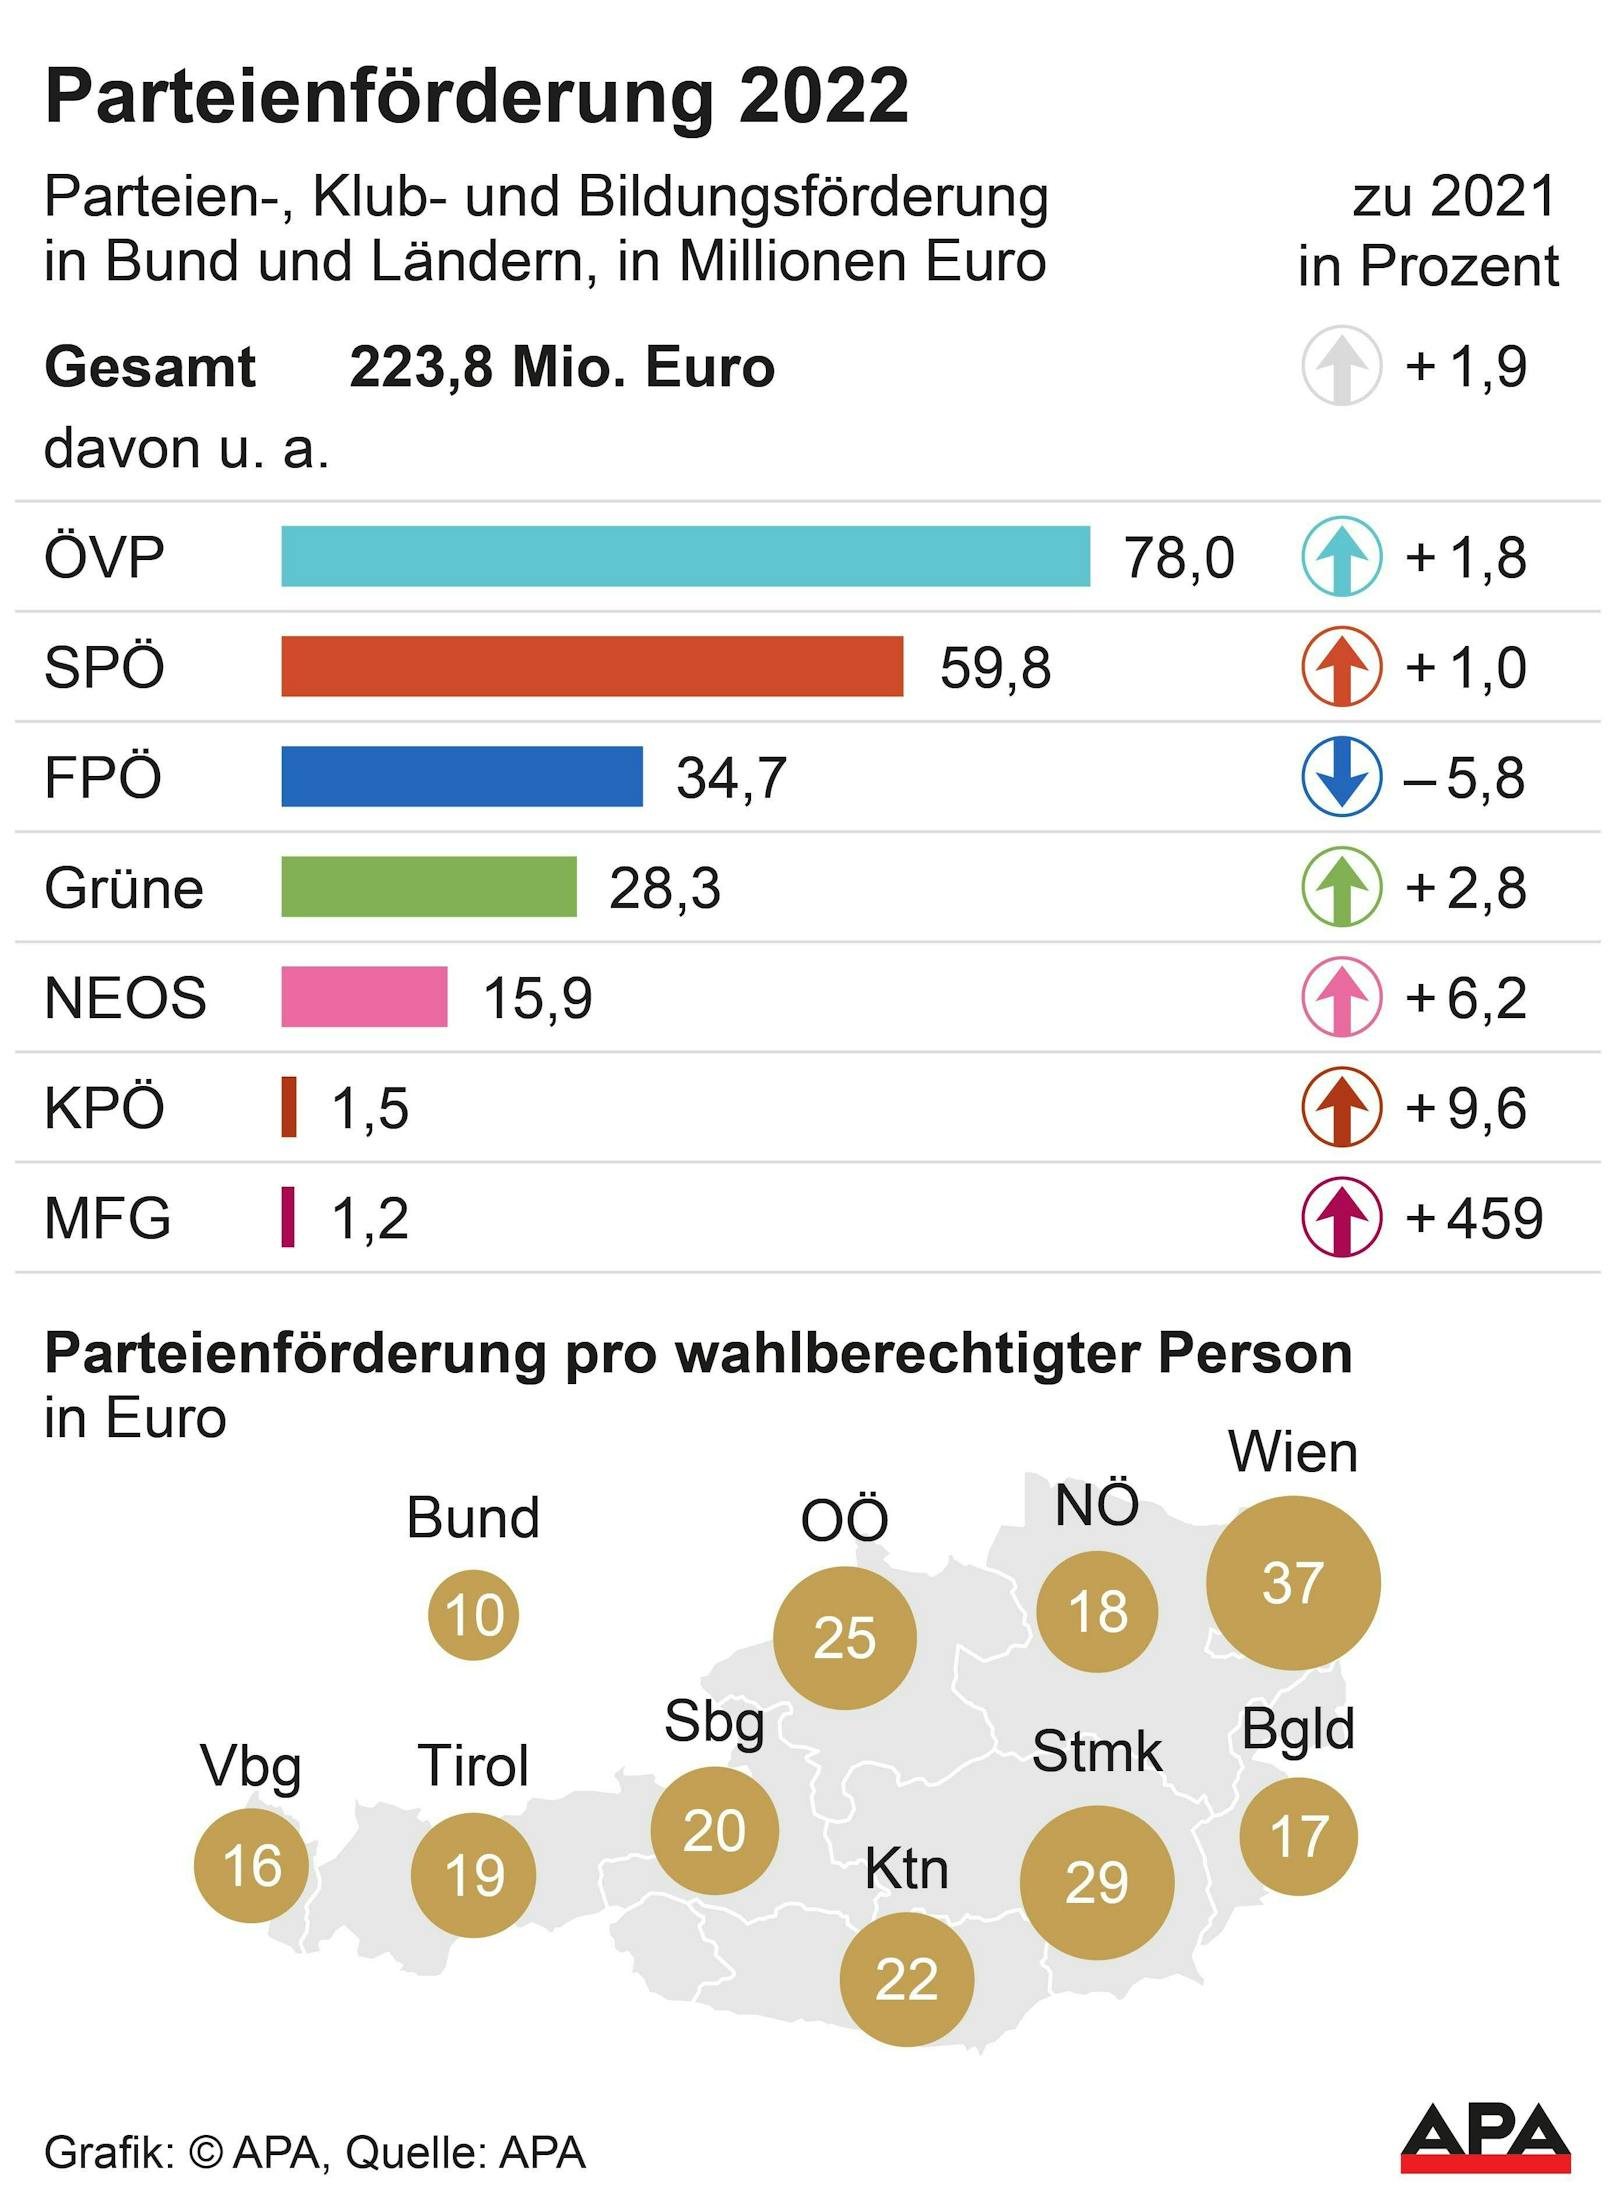 Die Aufteilung der Parteienförderung in Österreich